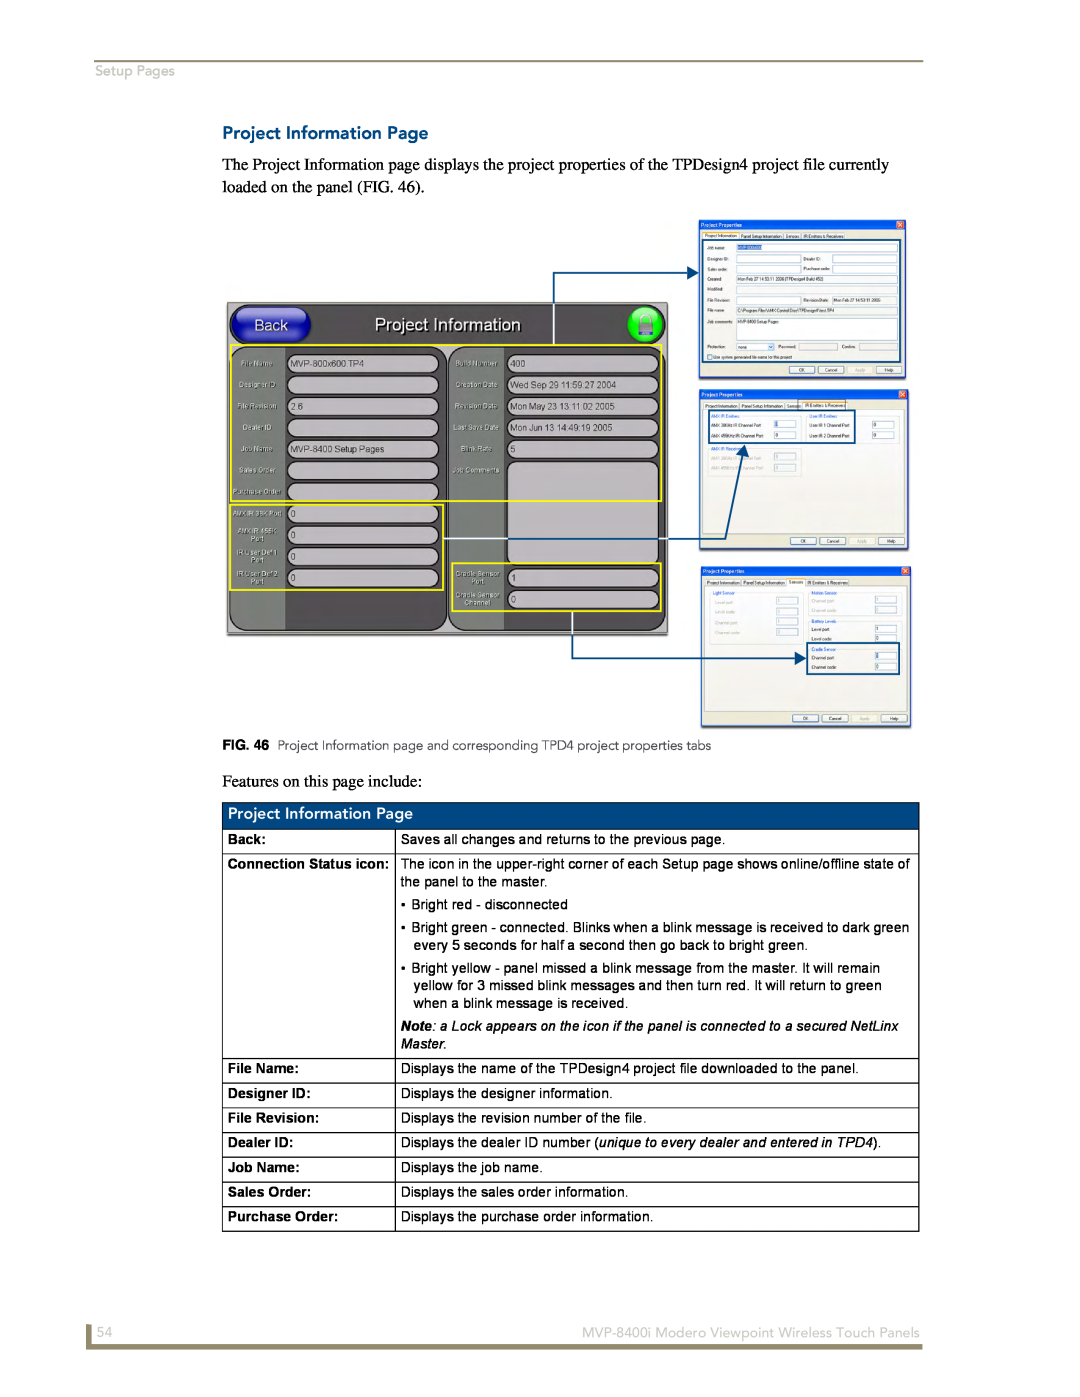 AMX MVP-8400i manual Project Information Page, Setup Pages, Back, Master, File Name, Designer ID, File Revision, Dealer ID 